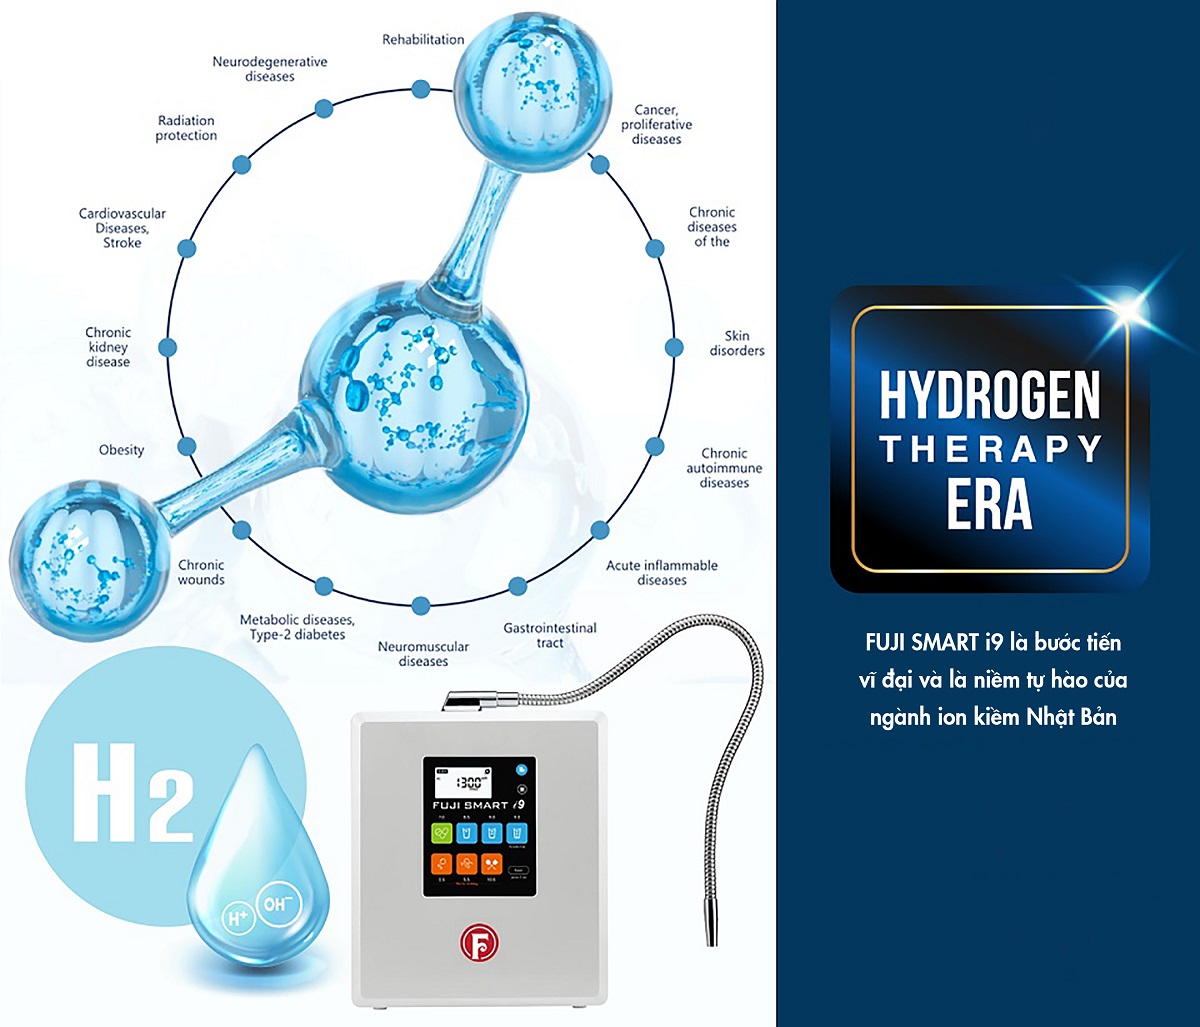 Máy lọc nước ion kiềm Fuji Smart i9 mang đến kỷ nguyên Hydrogen trị liệu